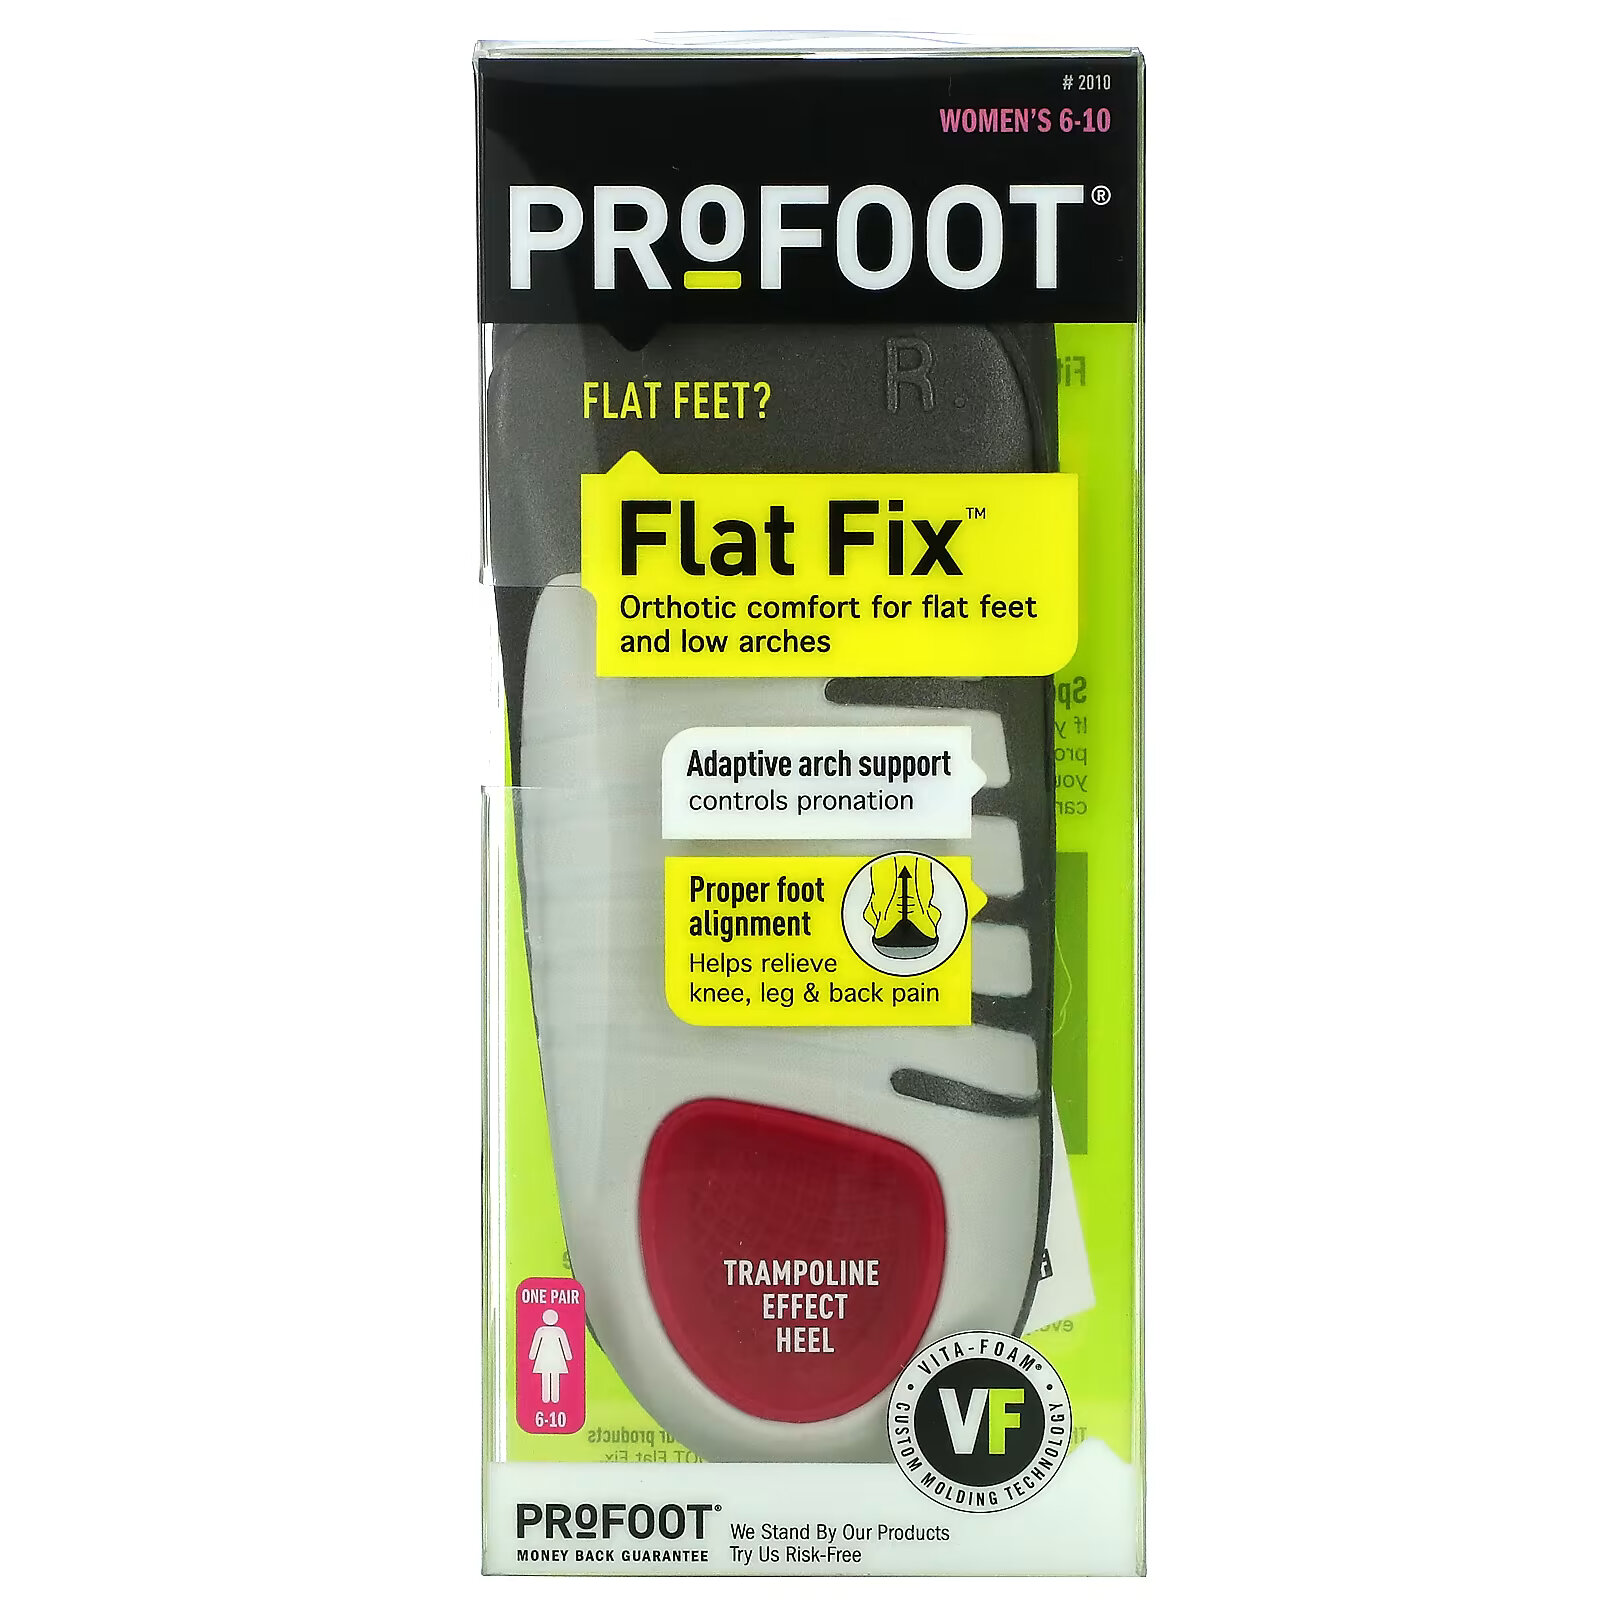 Profoot, Flat Fix, адаптивная поддержка свода стопы, для женщин 6–10 лет, 1 пара profoot flat fix адаптивная поддержка свода стопы для женщин 6–10 лет 1 пара